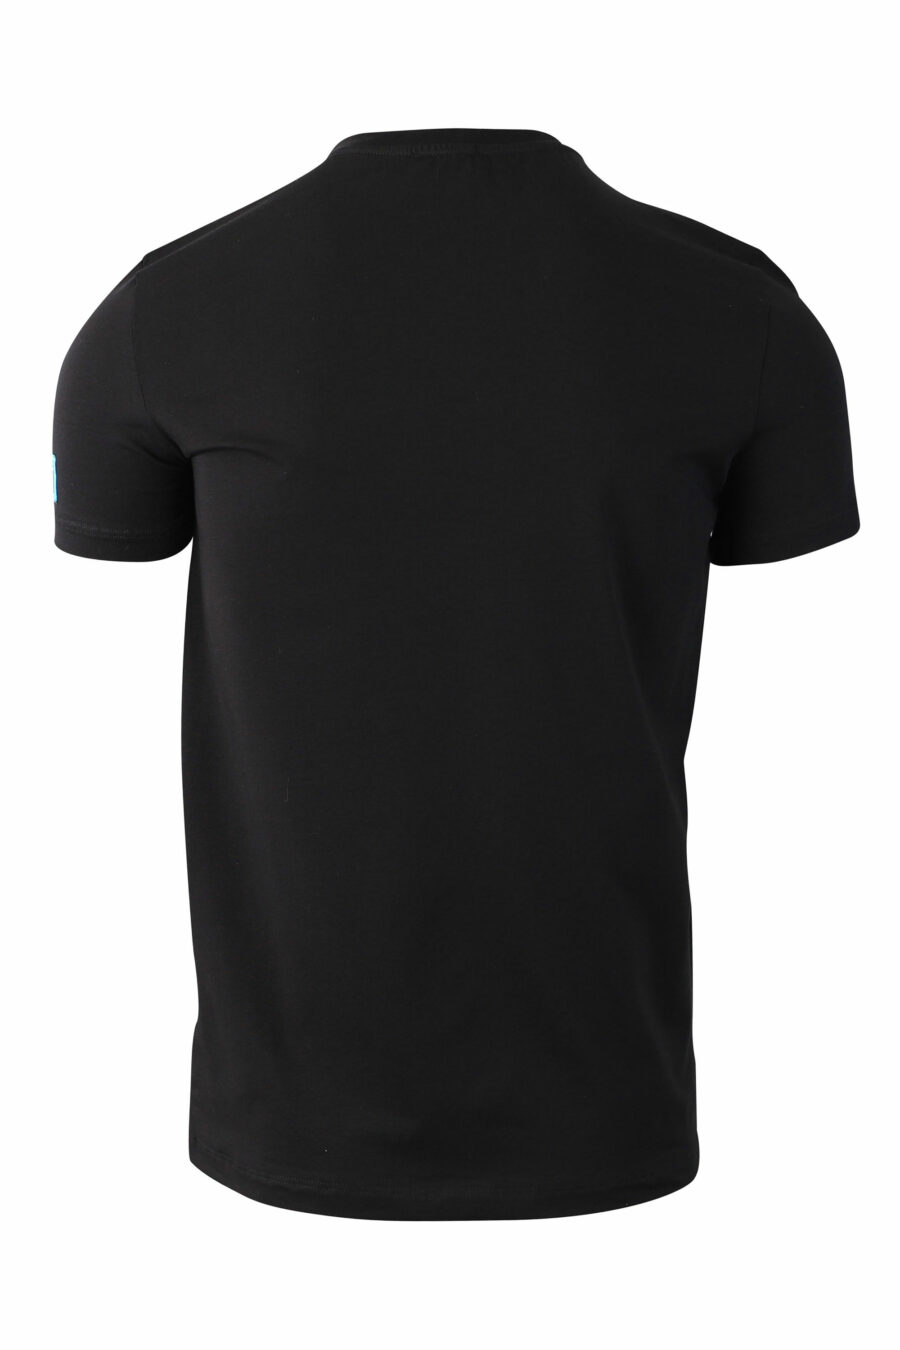 Schwarzes T-Shirt mit blauem Mini-Logo "Icon" auf dem Ärmel - IMG 0037 1